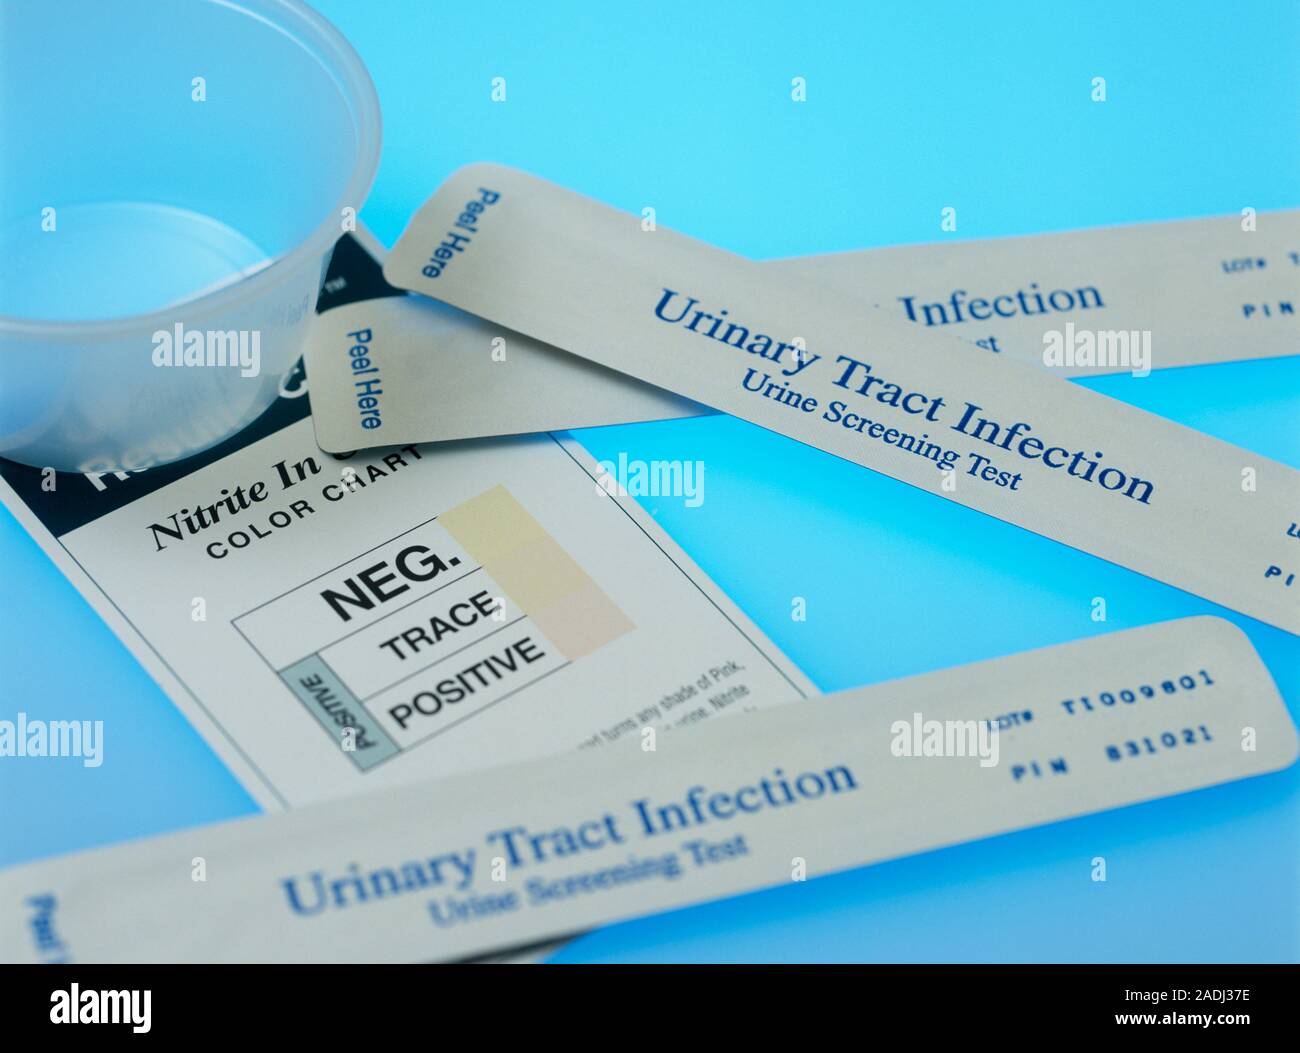 Infection des voies urinaires Bandelettes de test urinaire